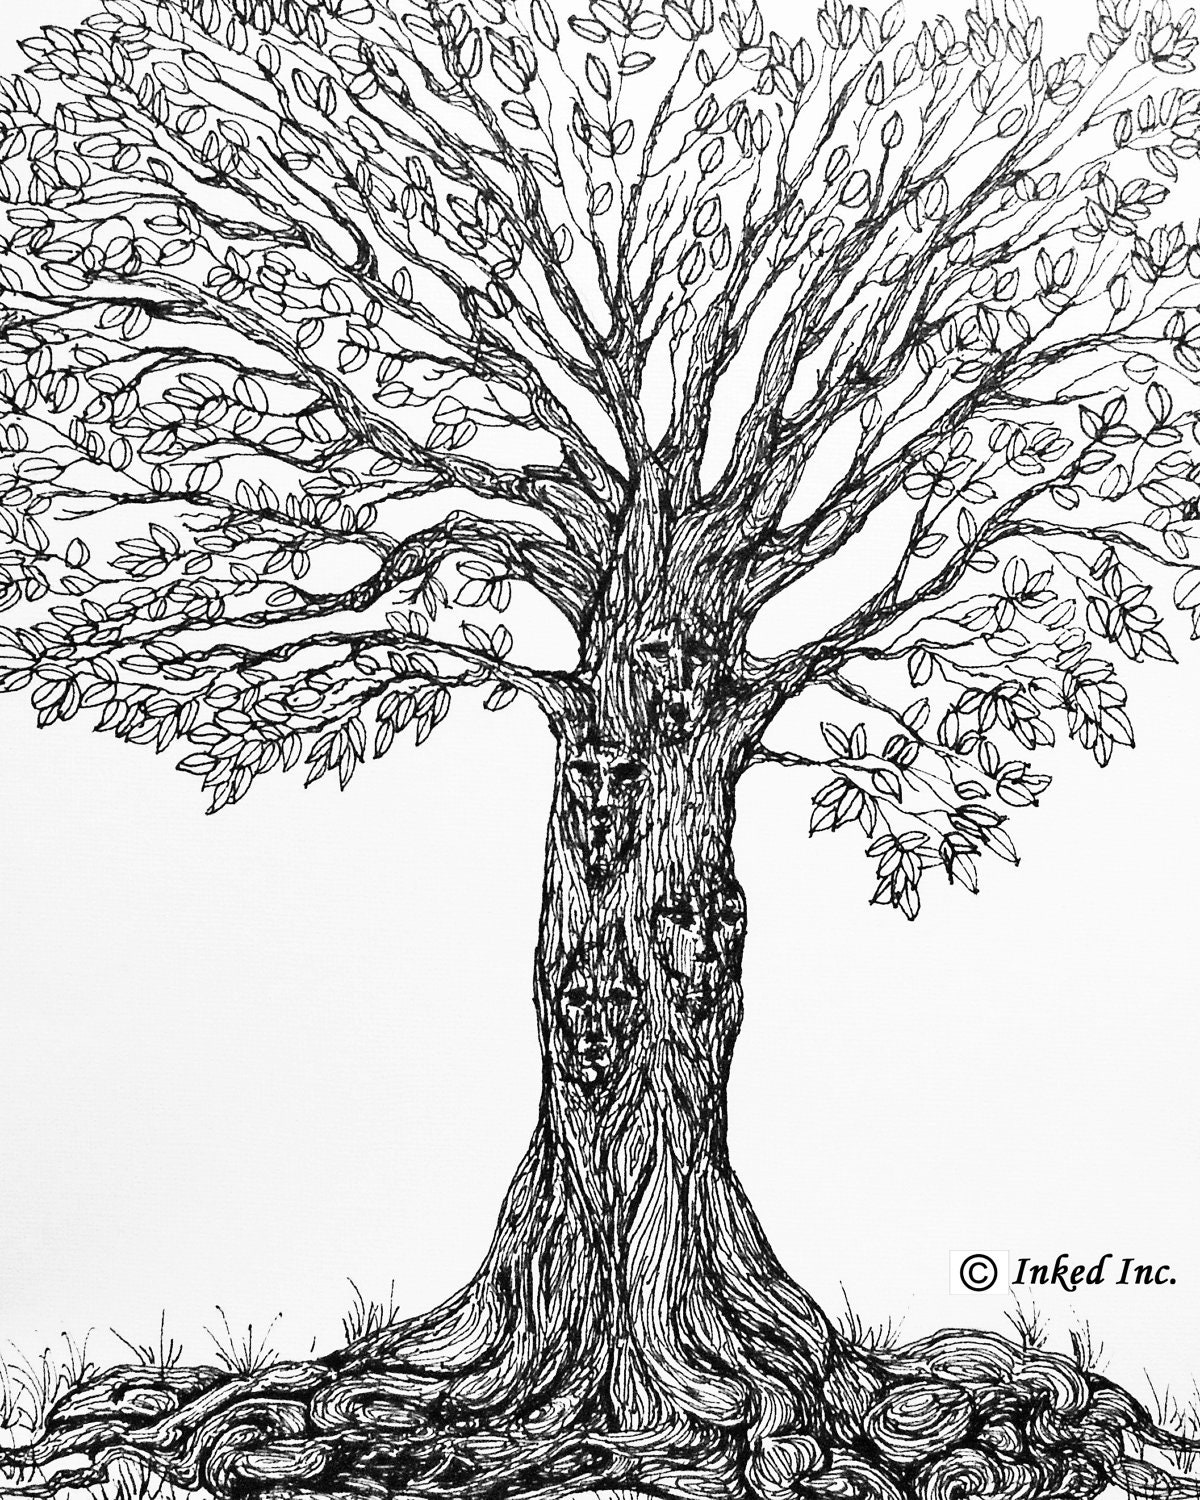 Printable Tree Pen and Ink Original Drawing Digital by InkedInk